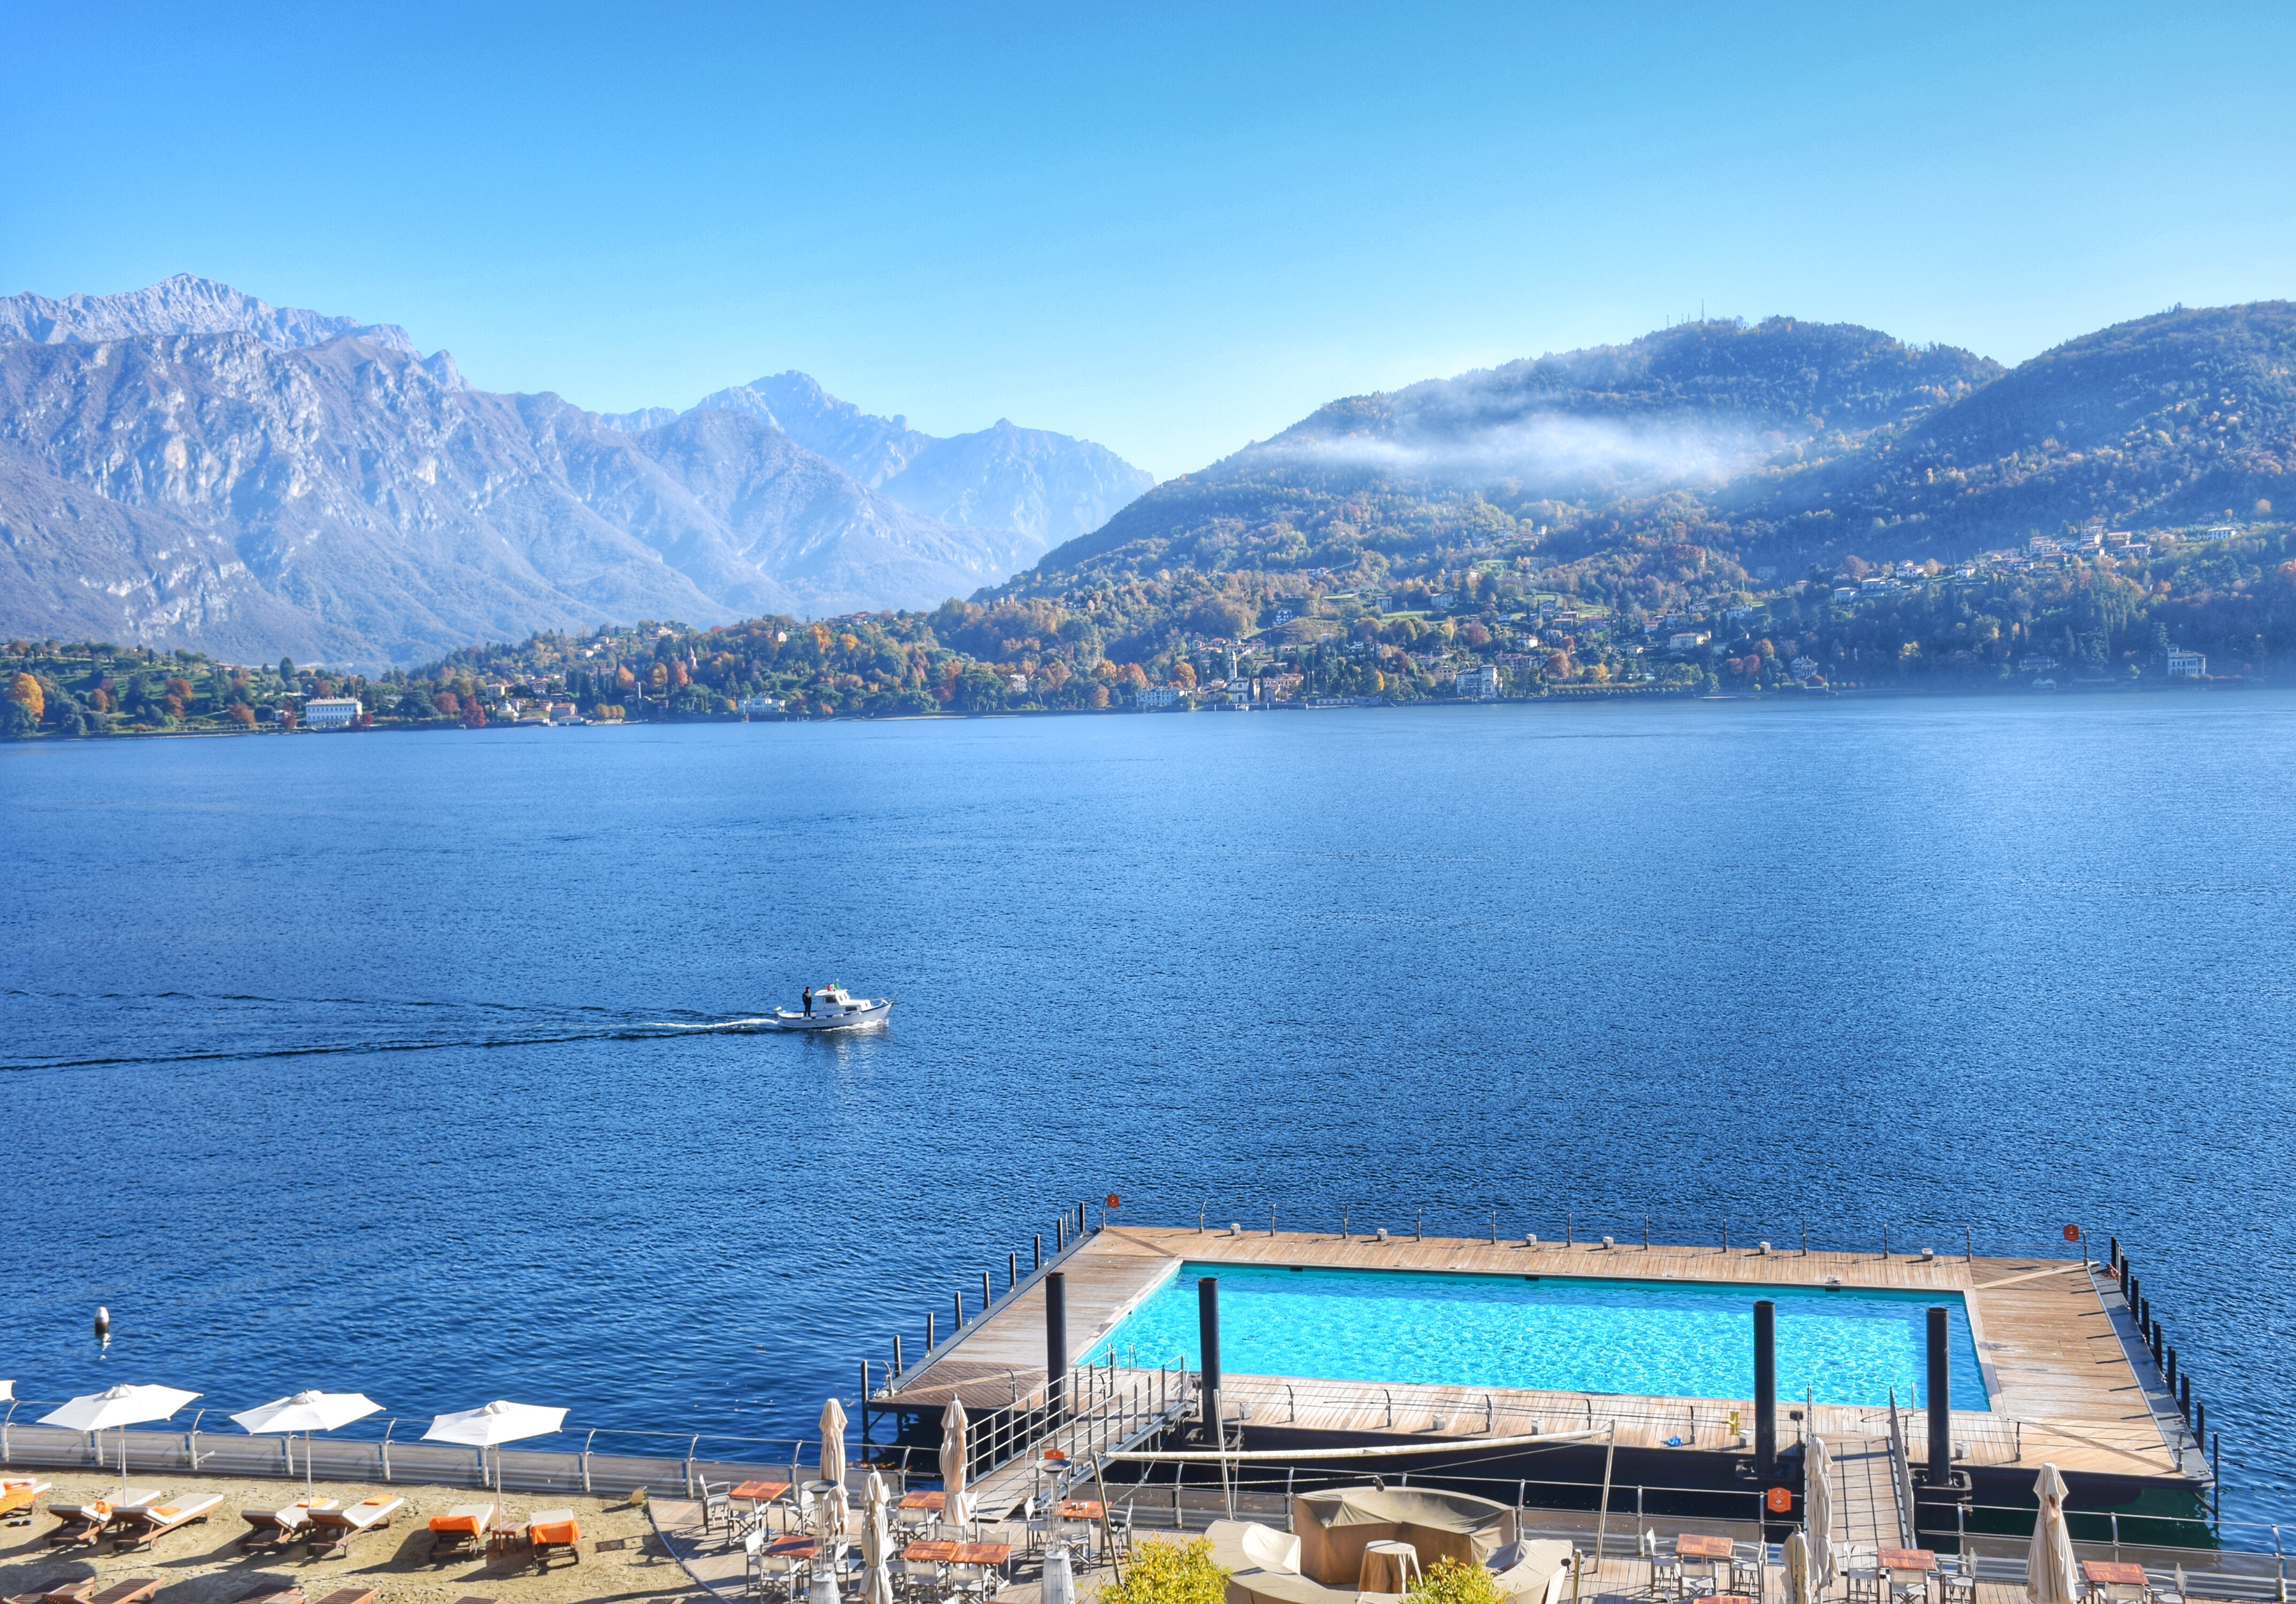 Piscina "Water On The Water" do Grand Hotel Tremezzo - Lago di Como - Itália